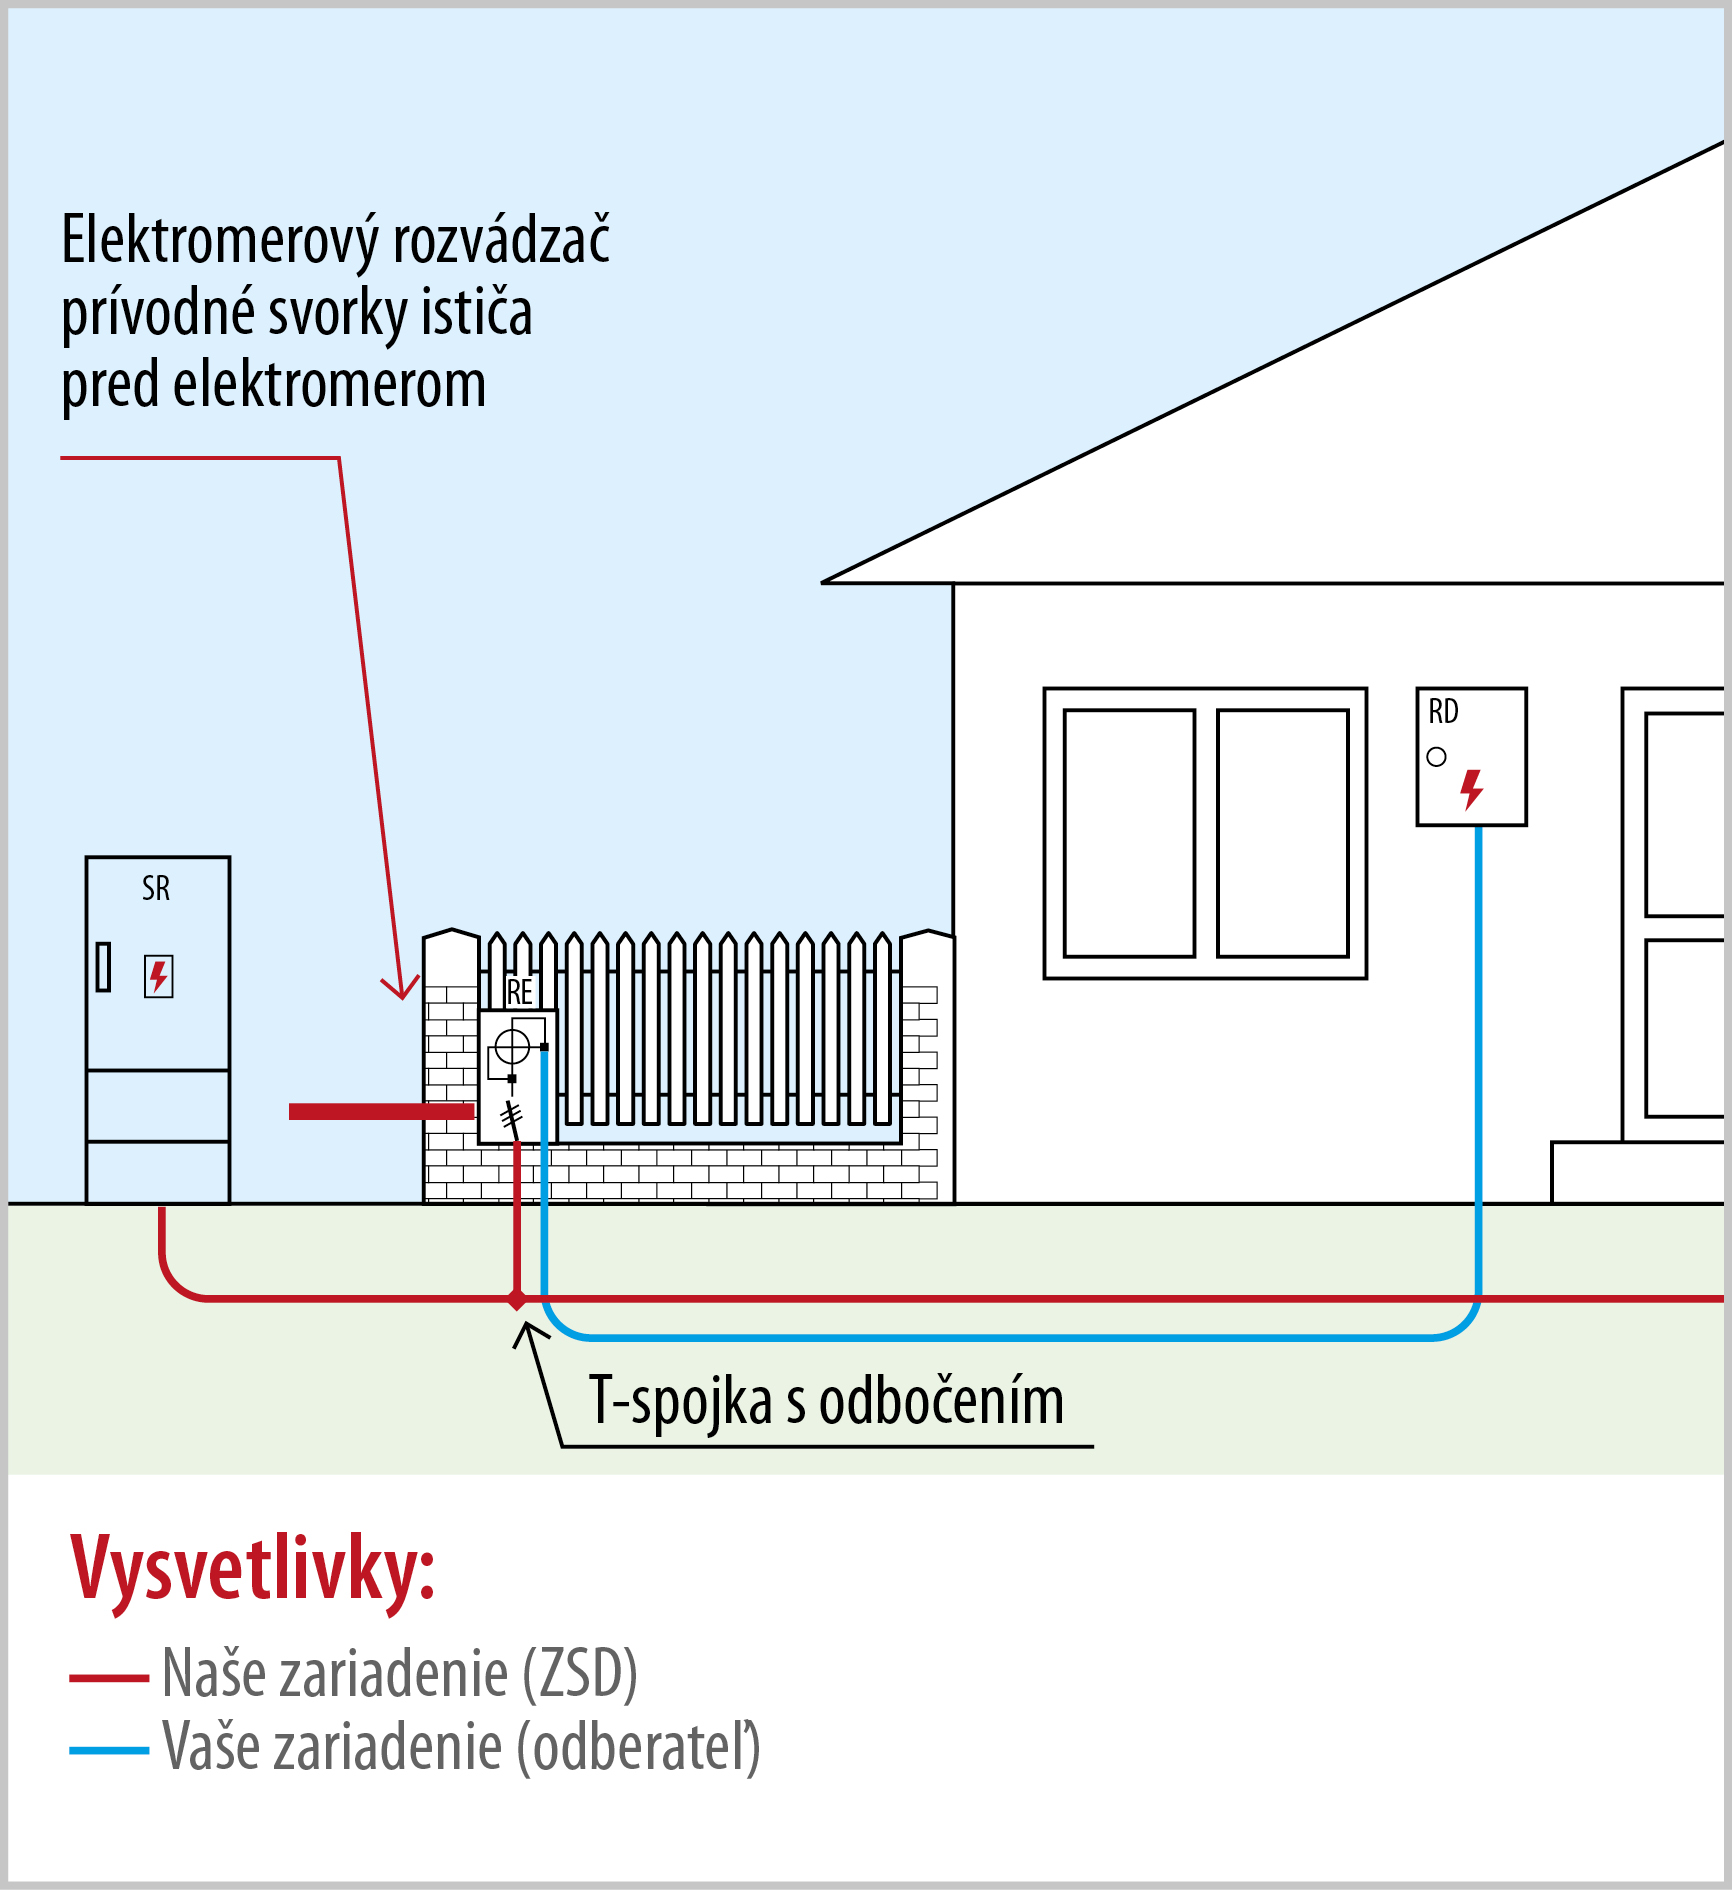 Pripojenie rodinného domu (bytového domu) z podzemného káblového vedenia pomocou priameho spojenia T-spojkou